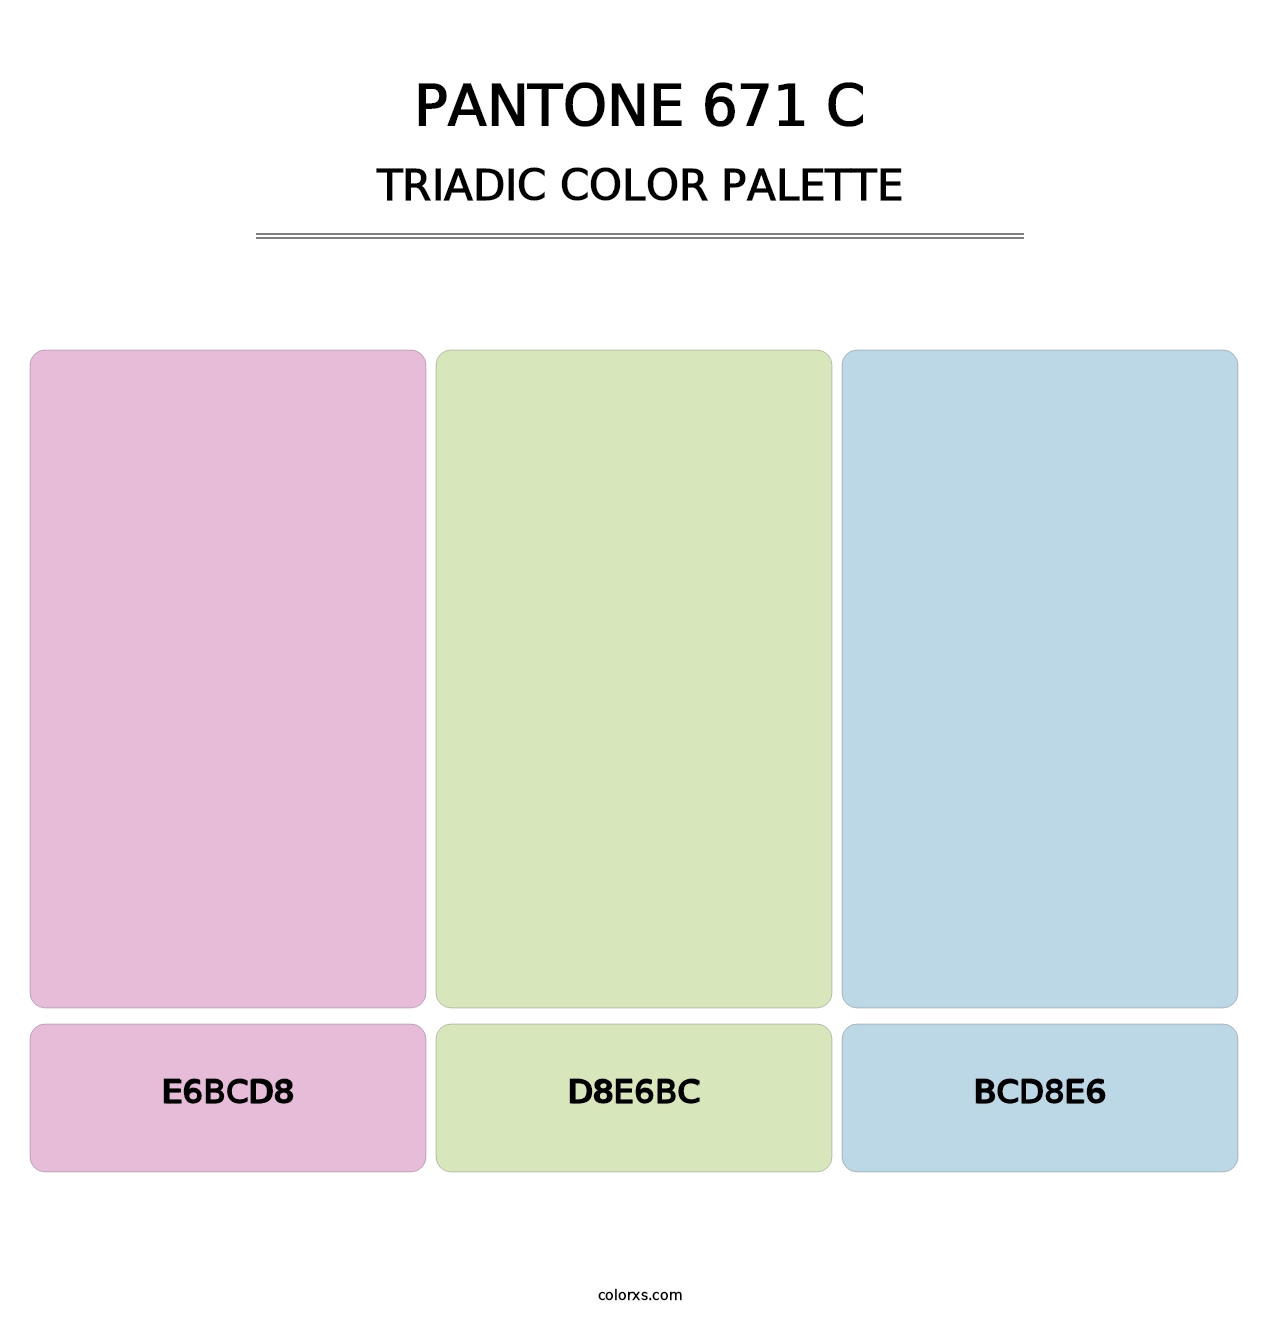 PANTONE 671 C - Triadic Color Palette